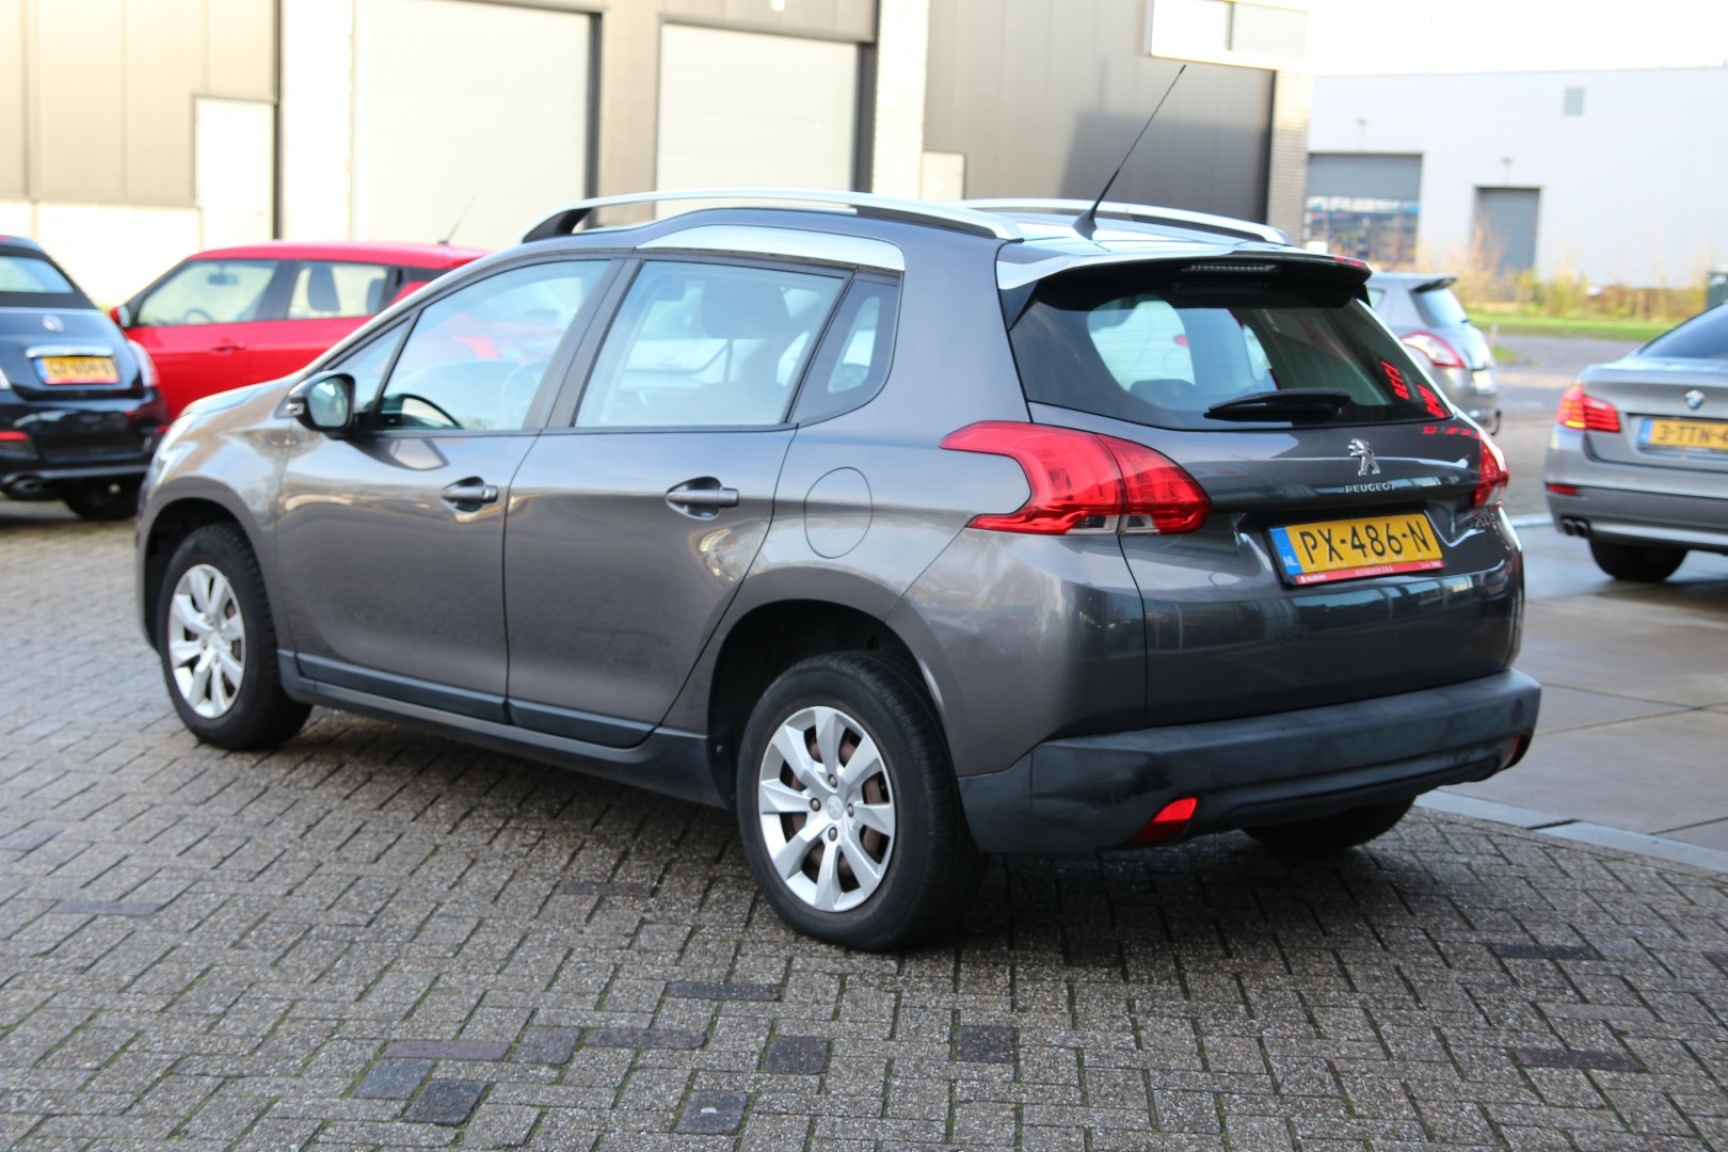 Peugeot-2008-8